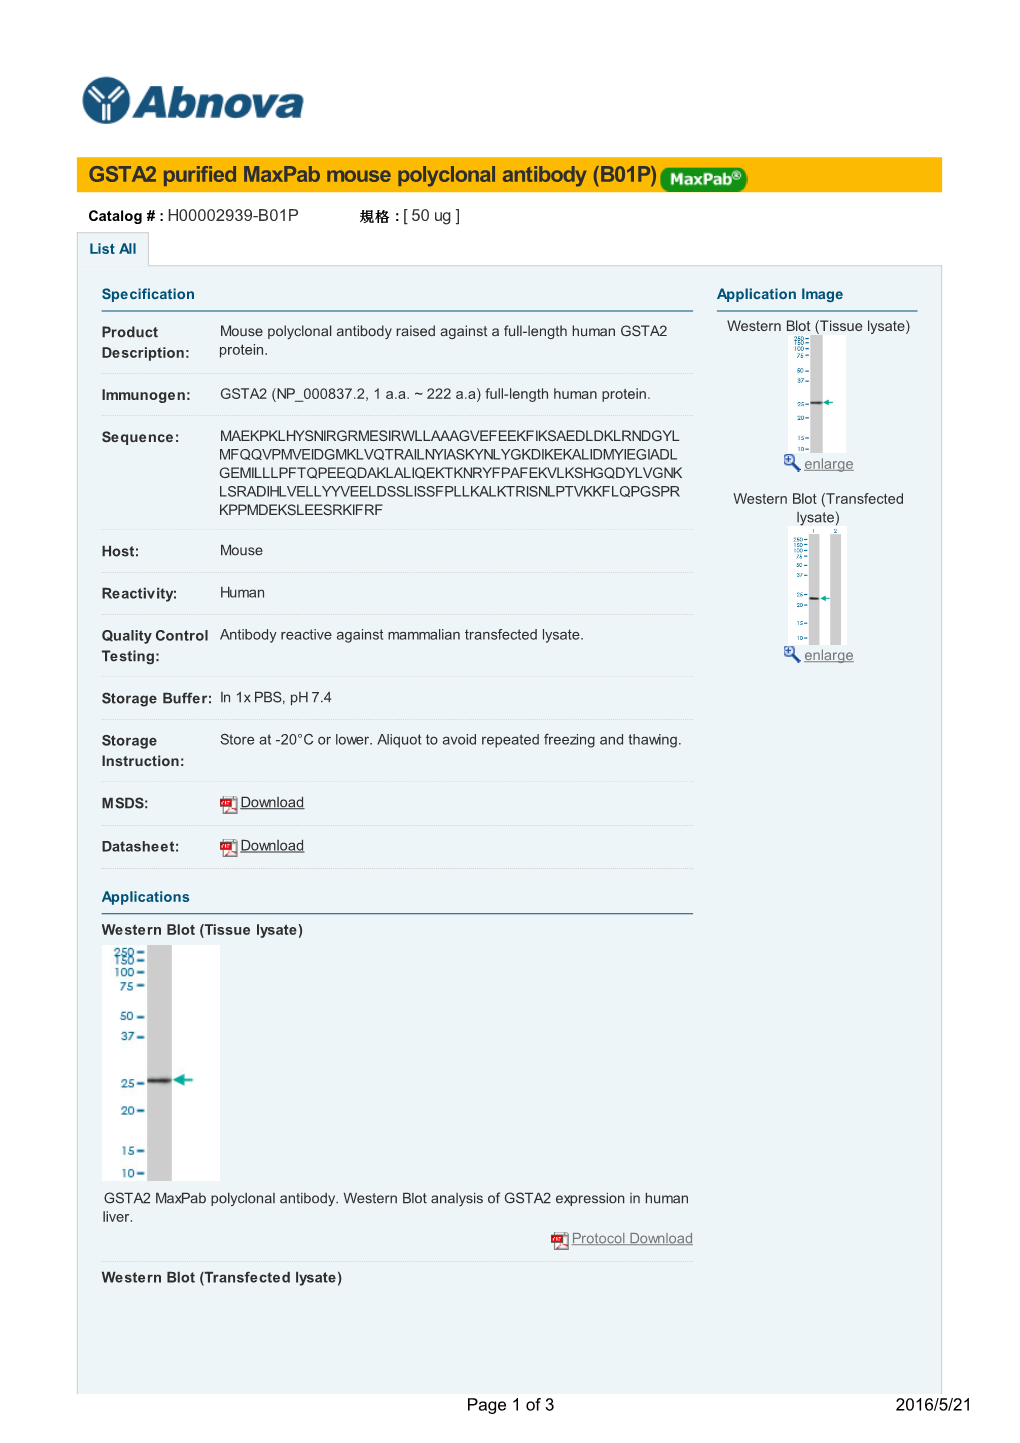 GSTA2 Purified Maxpab Mouse Polyclonal Antibody (B01P)